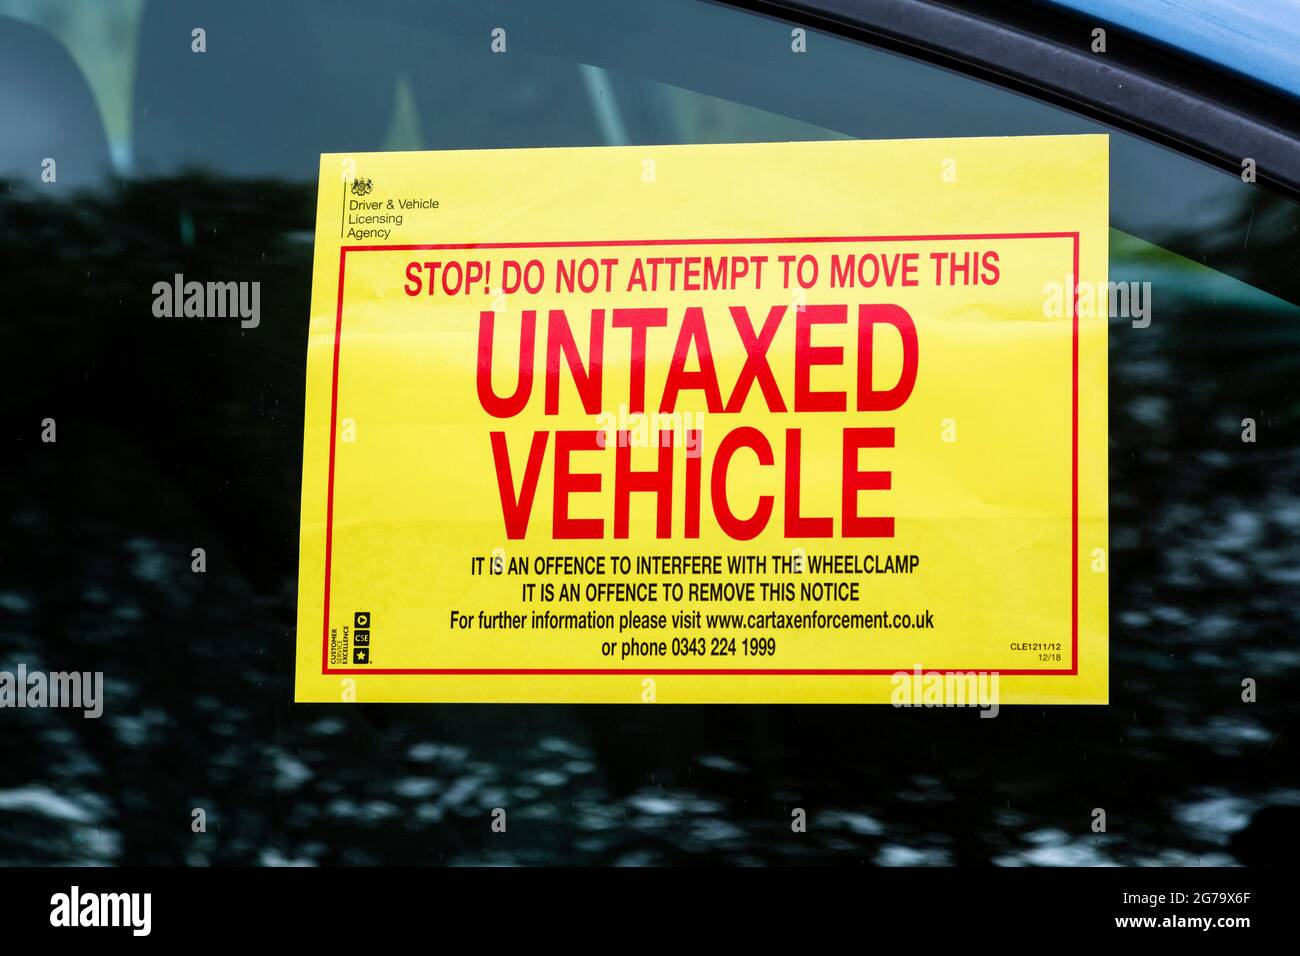 DVLA warning sign on an Untaxed Vehicle window, UK Stock Photo